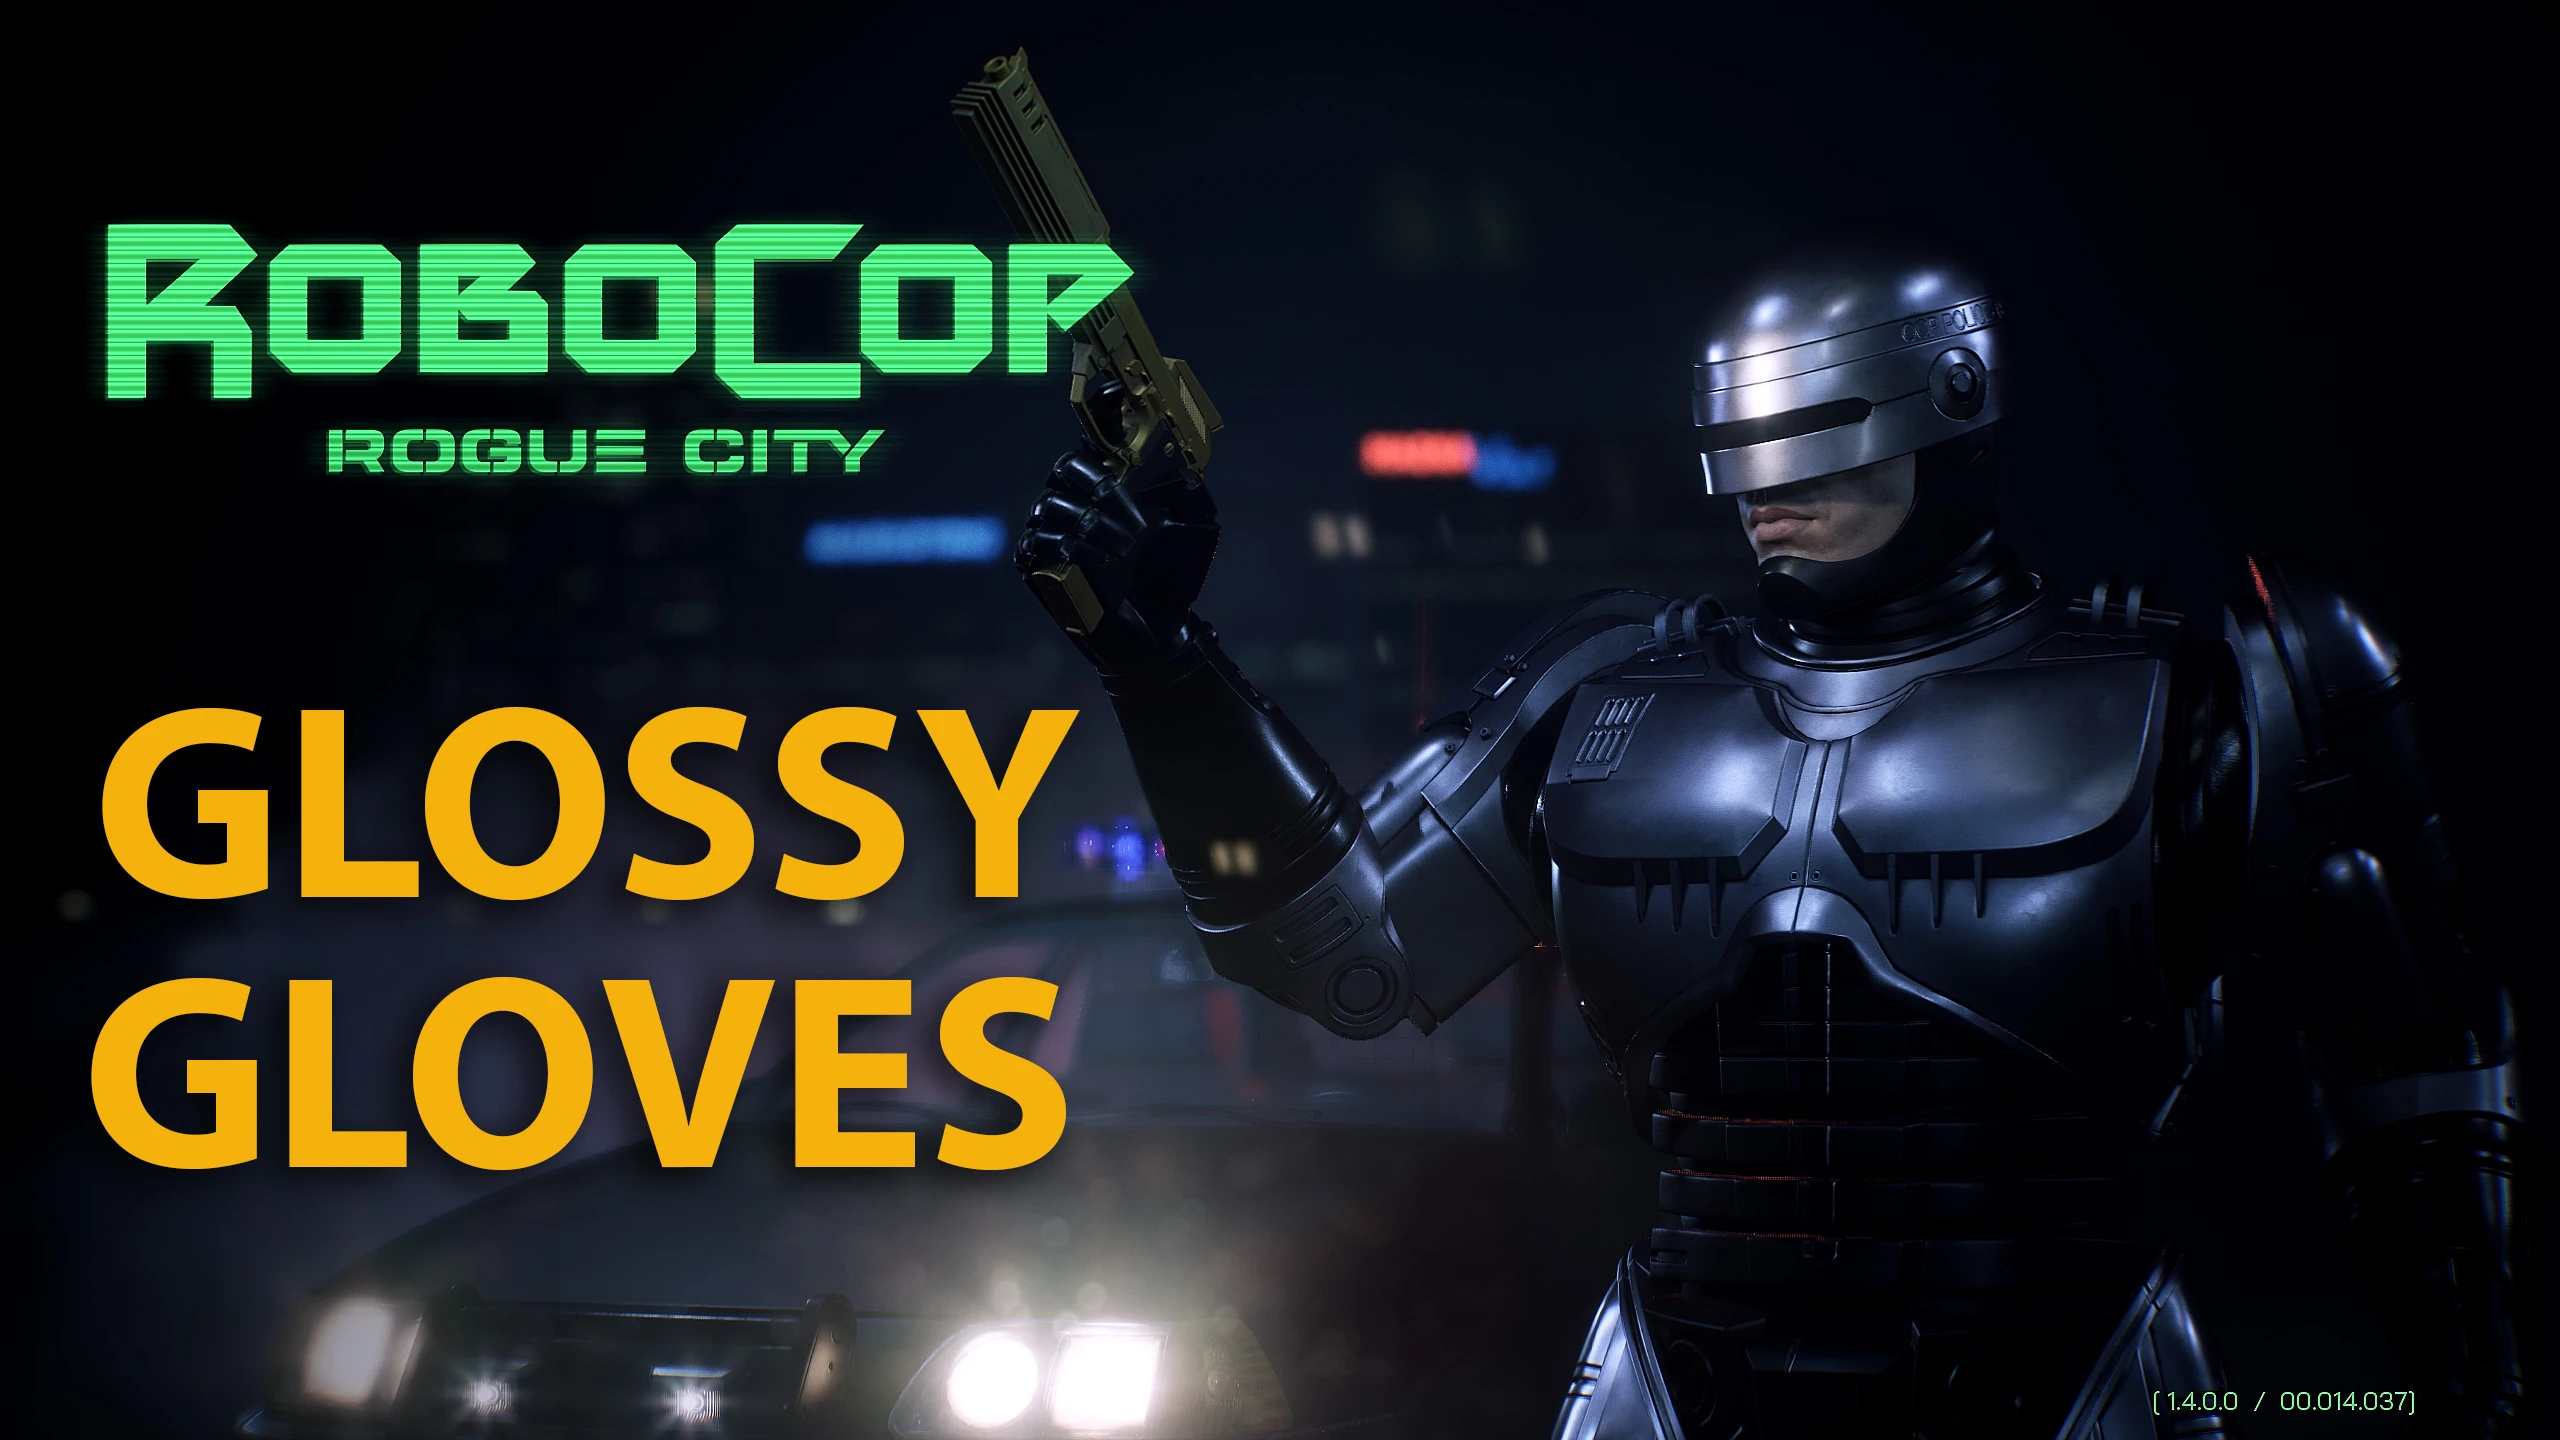 RoboCop: Rogue City download the new